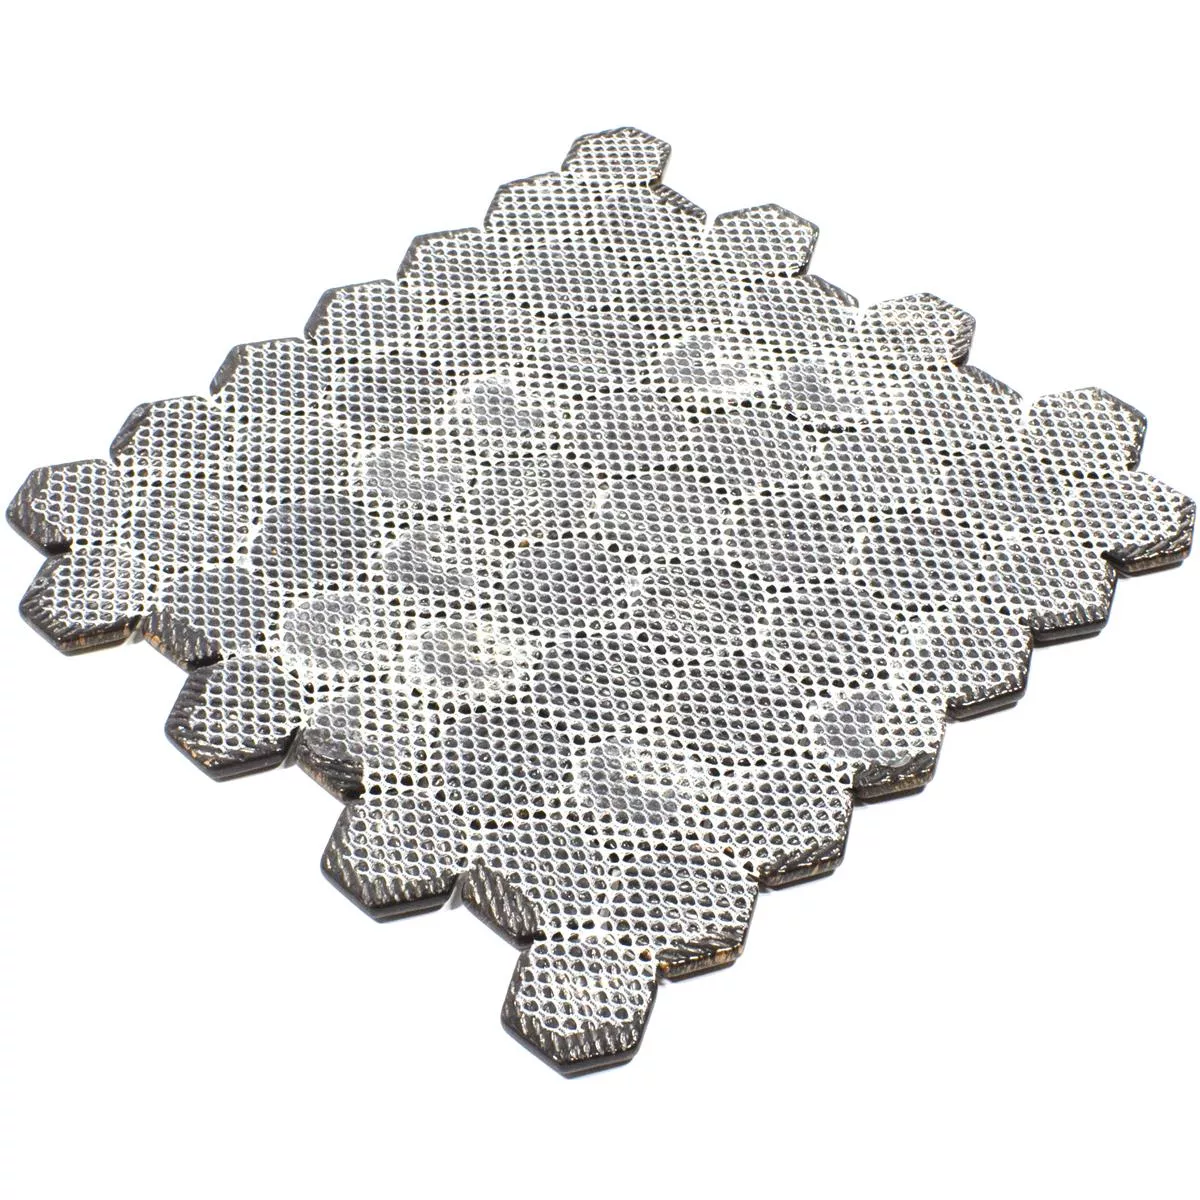 Sample Glass Mosaic Tiles Leopard Hexagon 3D Grey